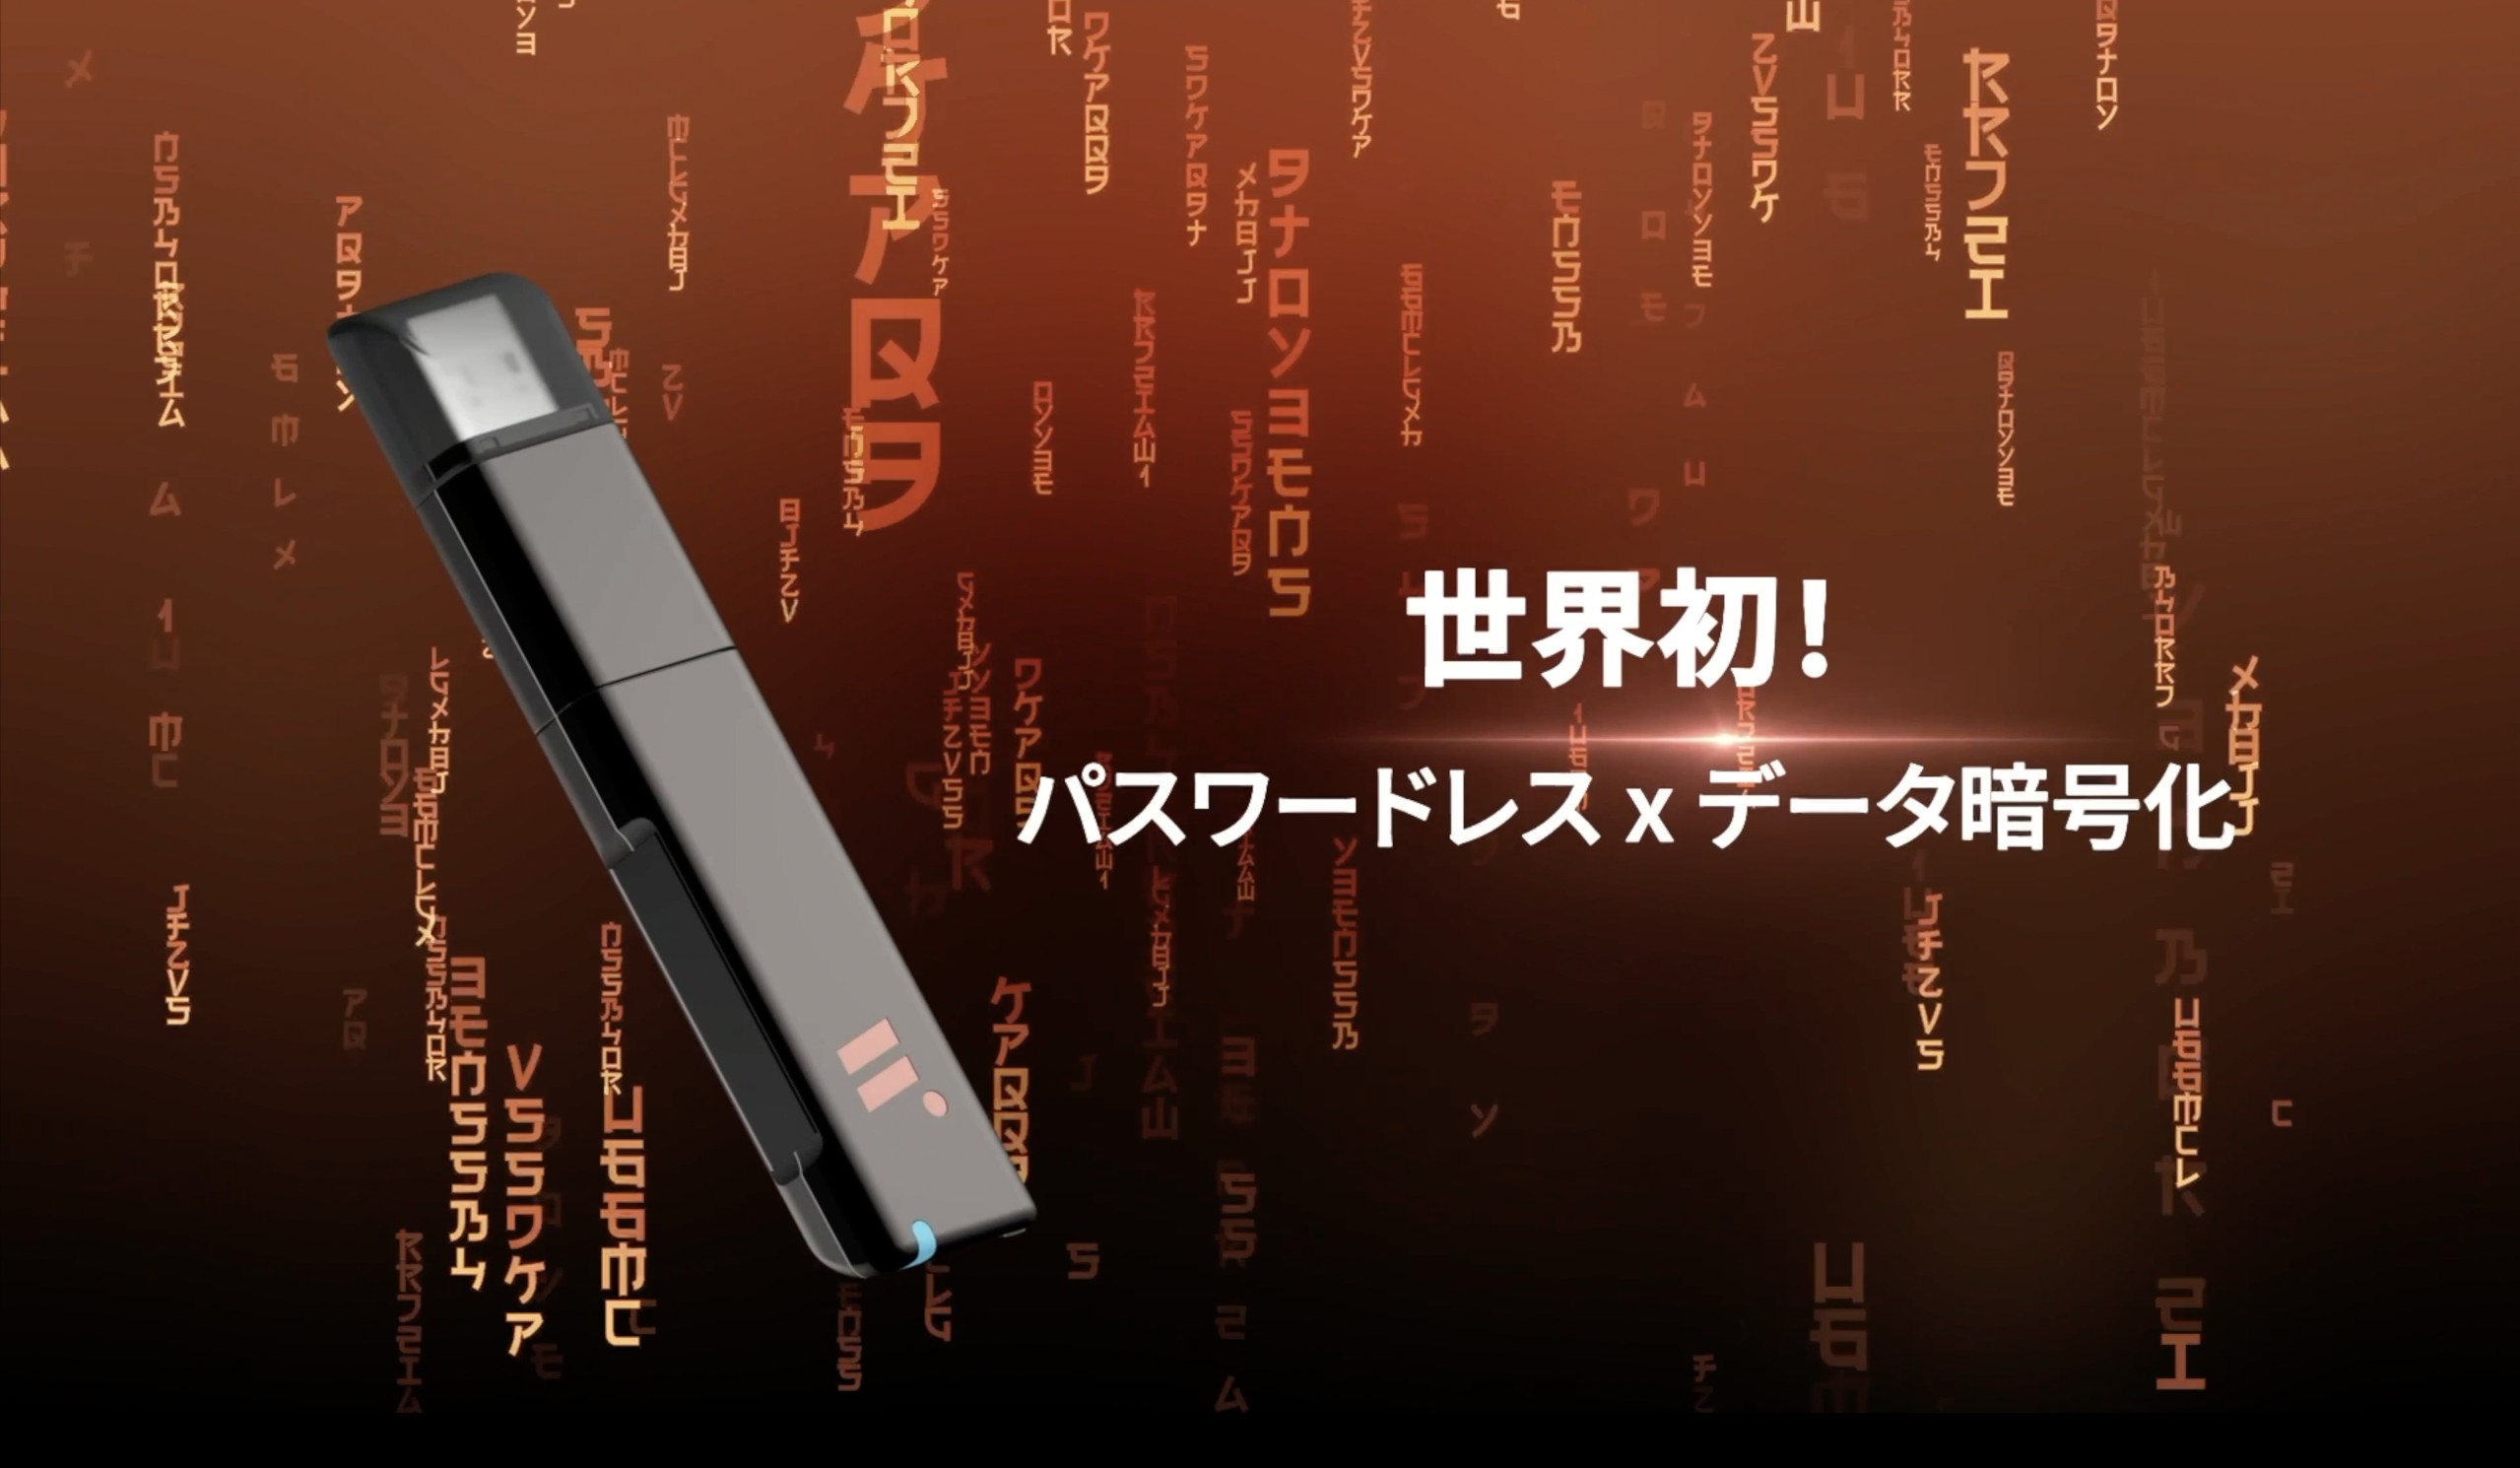 匯 智 安 全 科 技 去 年 在 日 本 C E A T E C 展 發 表 全 球 首 支 無 密 碼 認 證 「 武 士 之 鑰 」 